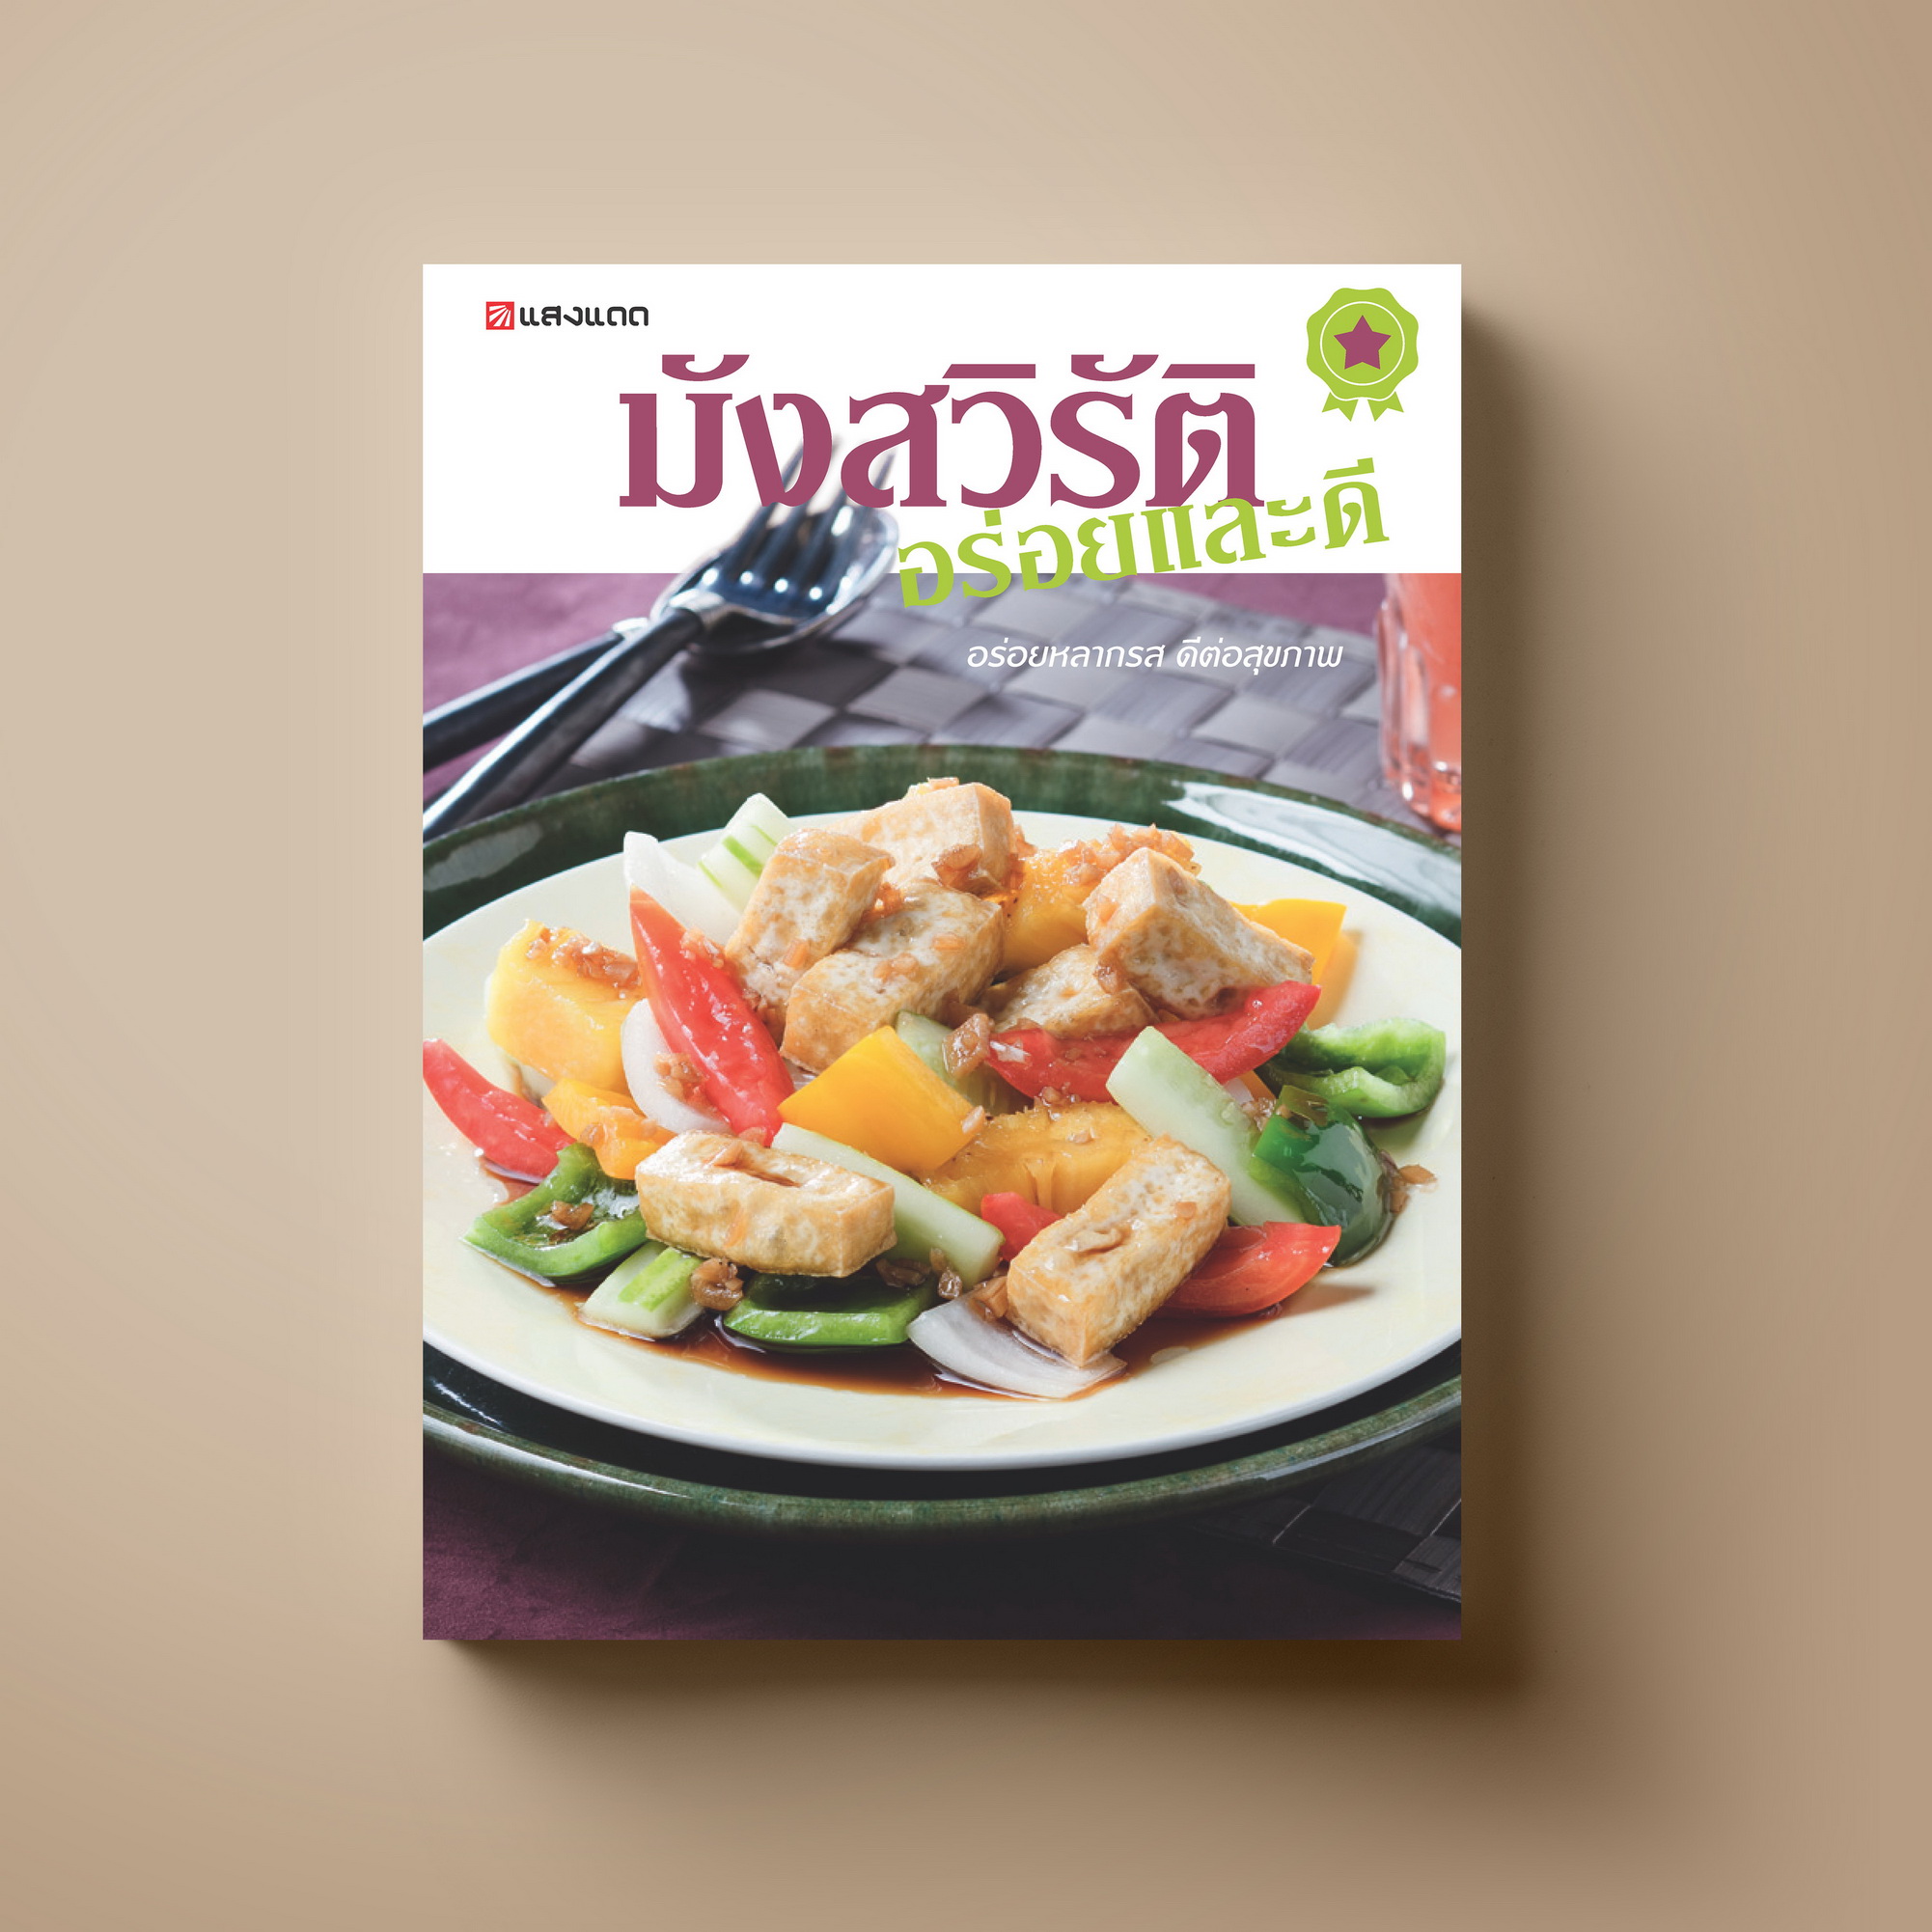 มังสวิรัติ อร่อยและดี หนังสือตำราอาหาร อาหารสุขภาพ Sangdad Book สำนักพิมพ์แสงแดด